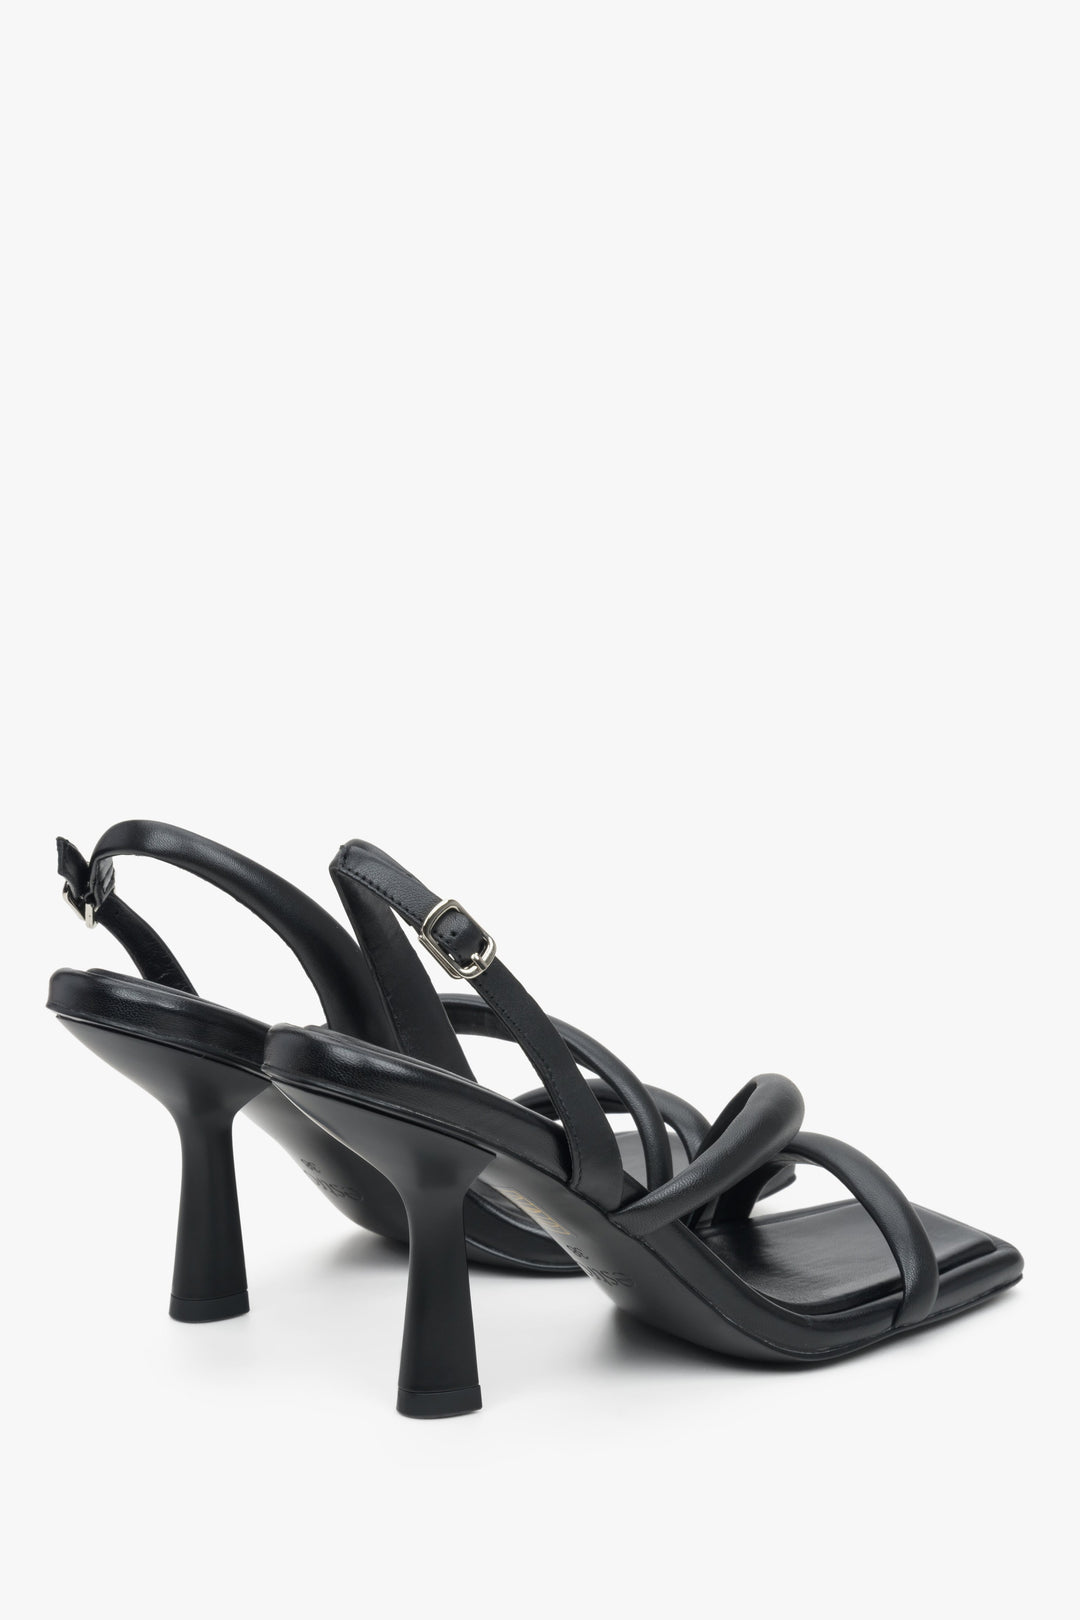 Women's soft strap heeled black sandals, Estro brand.